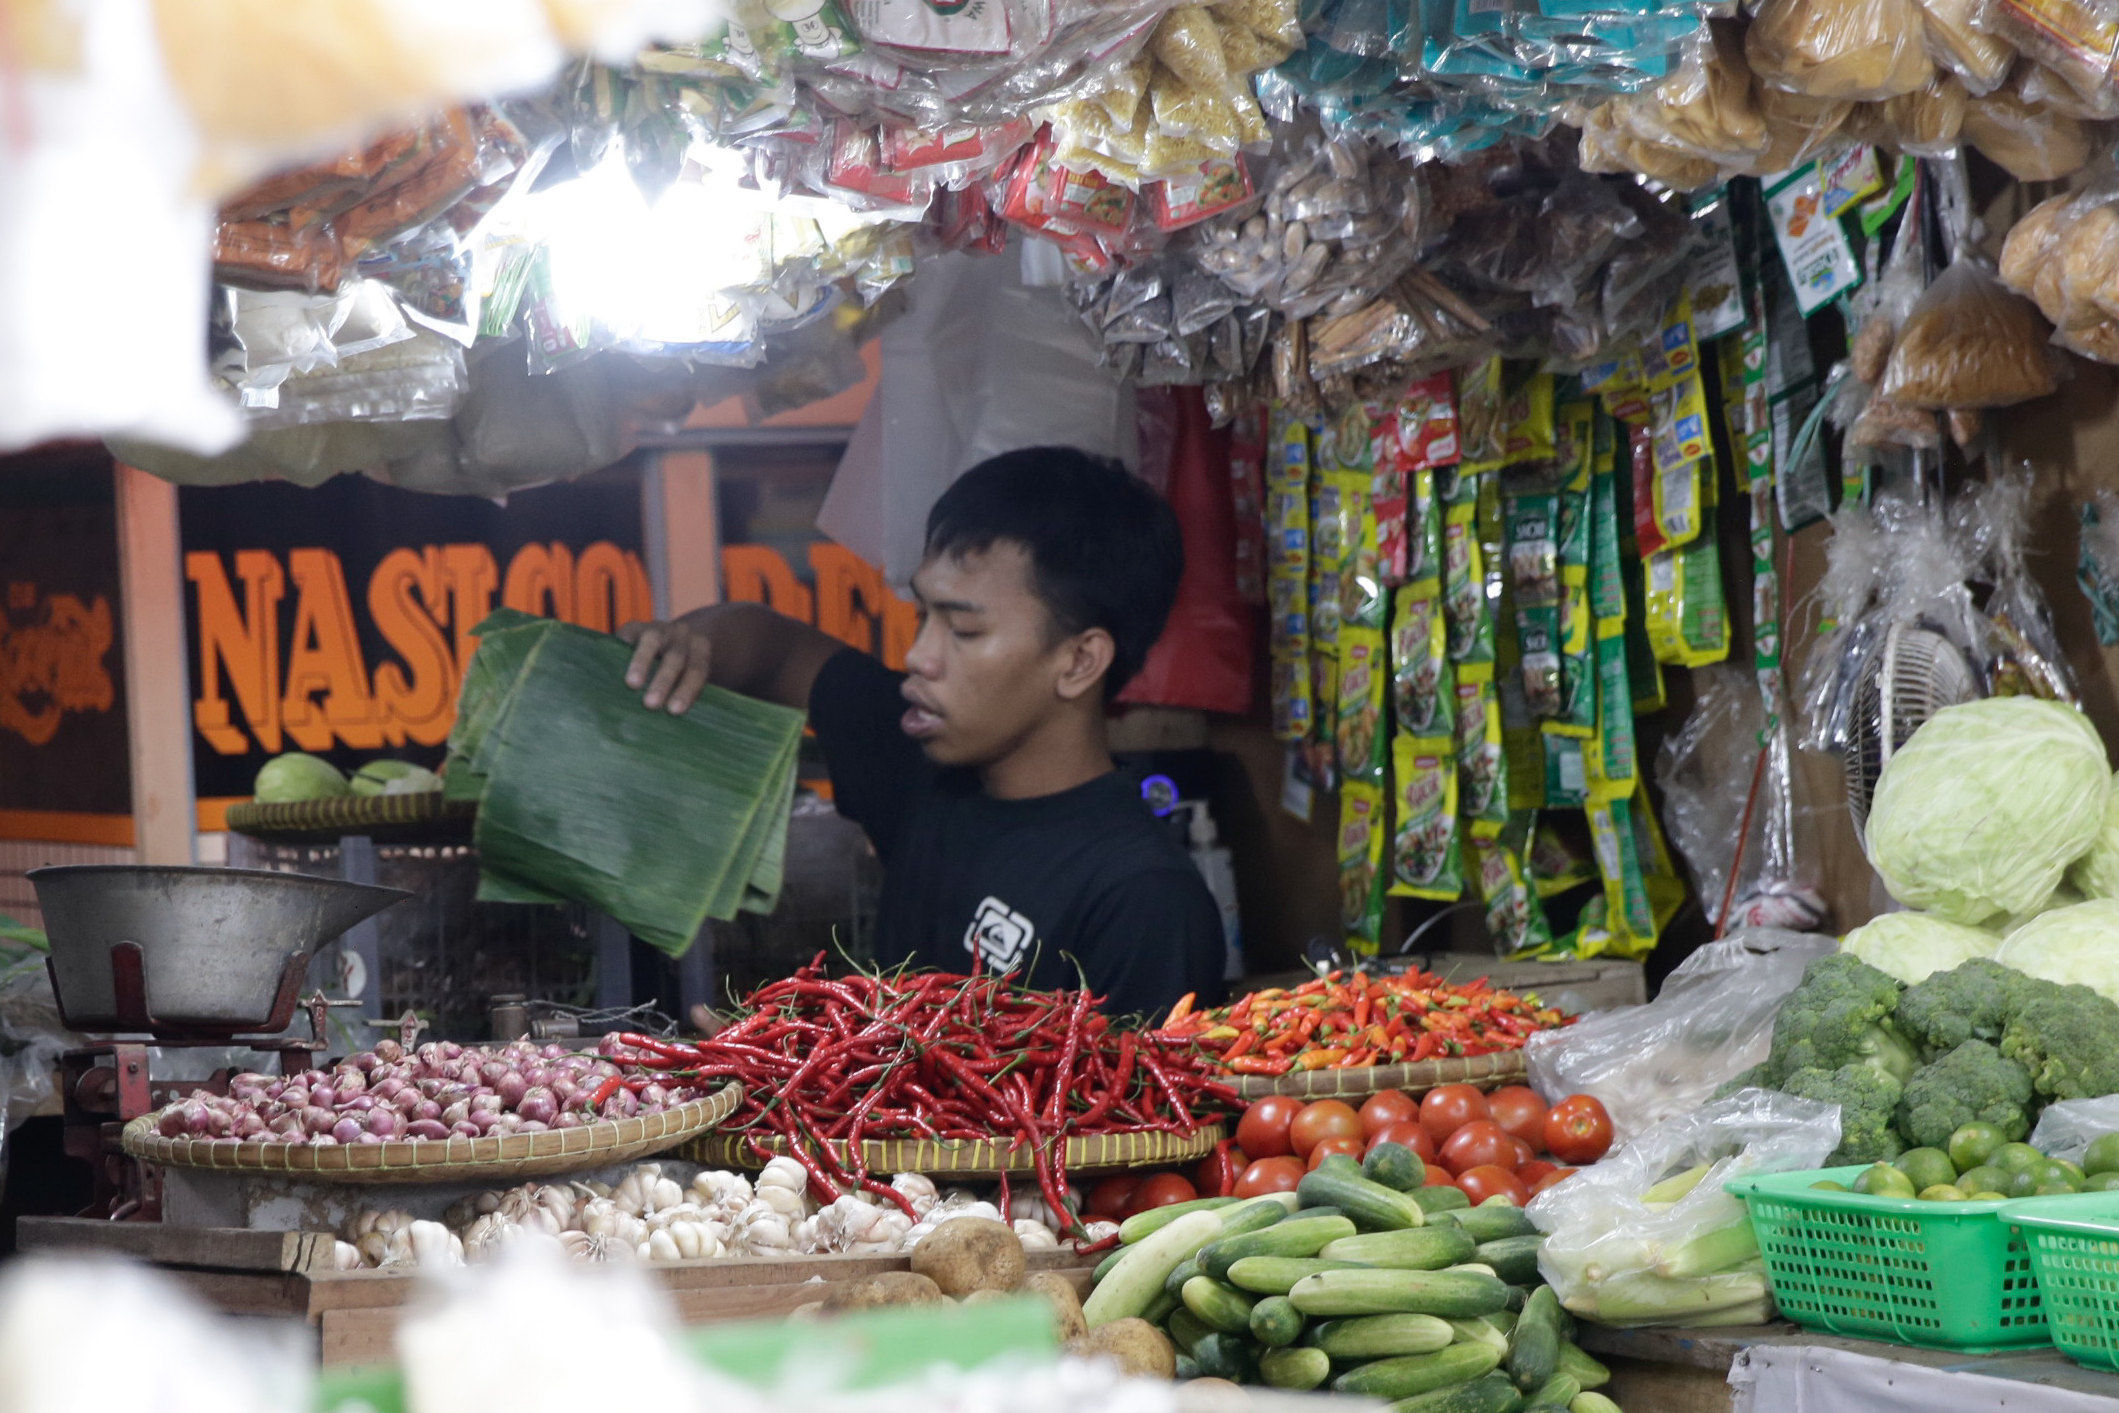 Pedagang berkativitas di kios pasar tradisional di Jakarta, Selasa, 21 September 2022. Foto: Ismail Pohan/TrenAsia